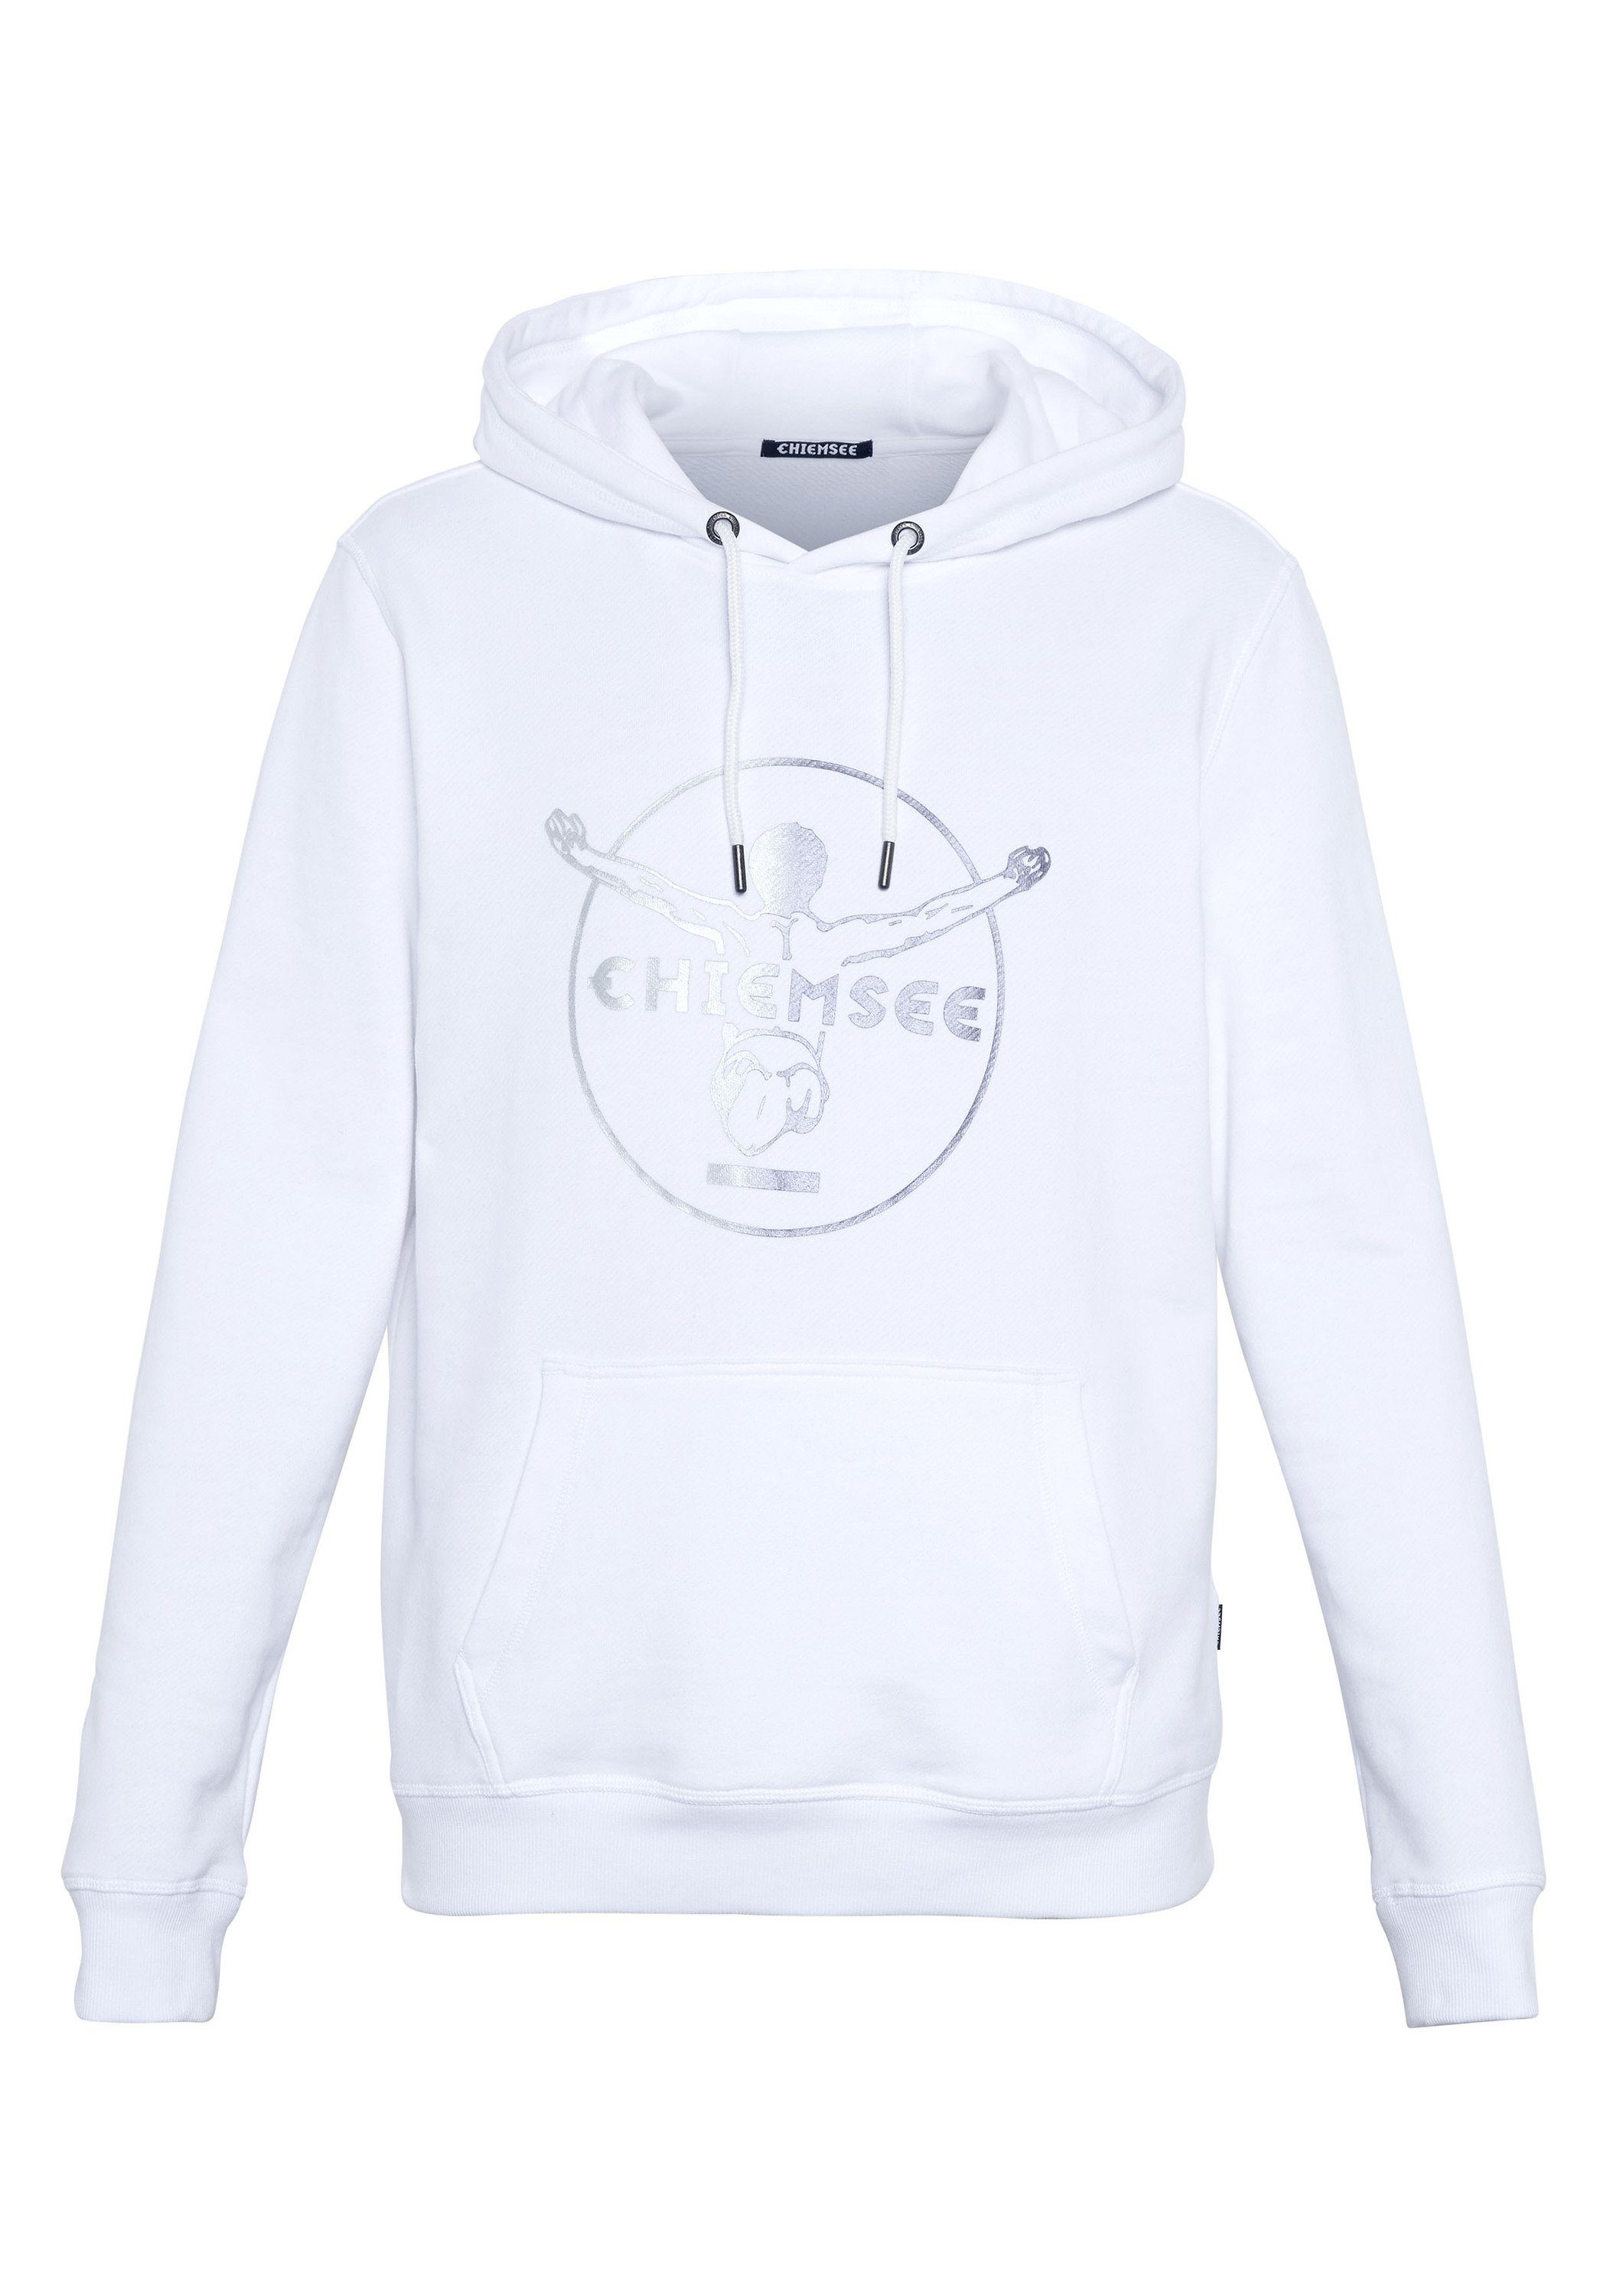 Chiemsee Kapuzensweatshirt mit Bright 11-0601 Hoodie 1 White Jumper-Motiv